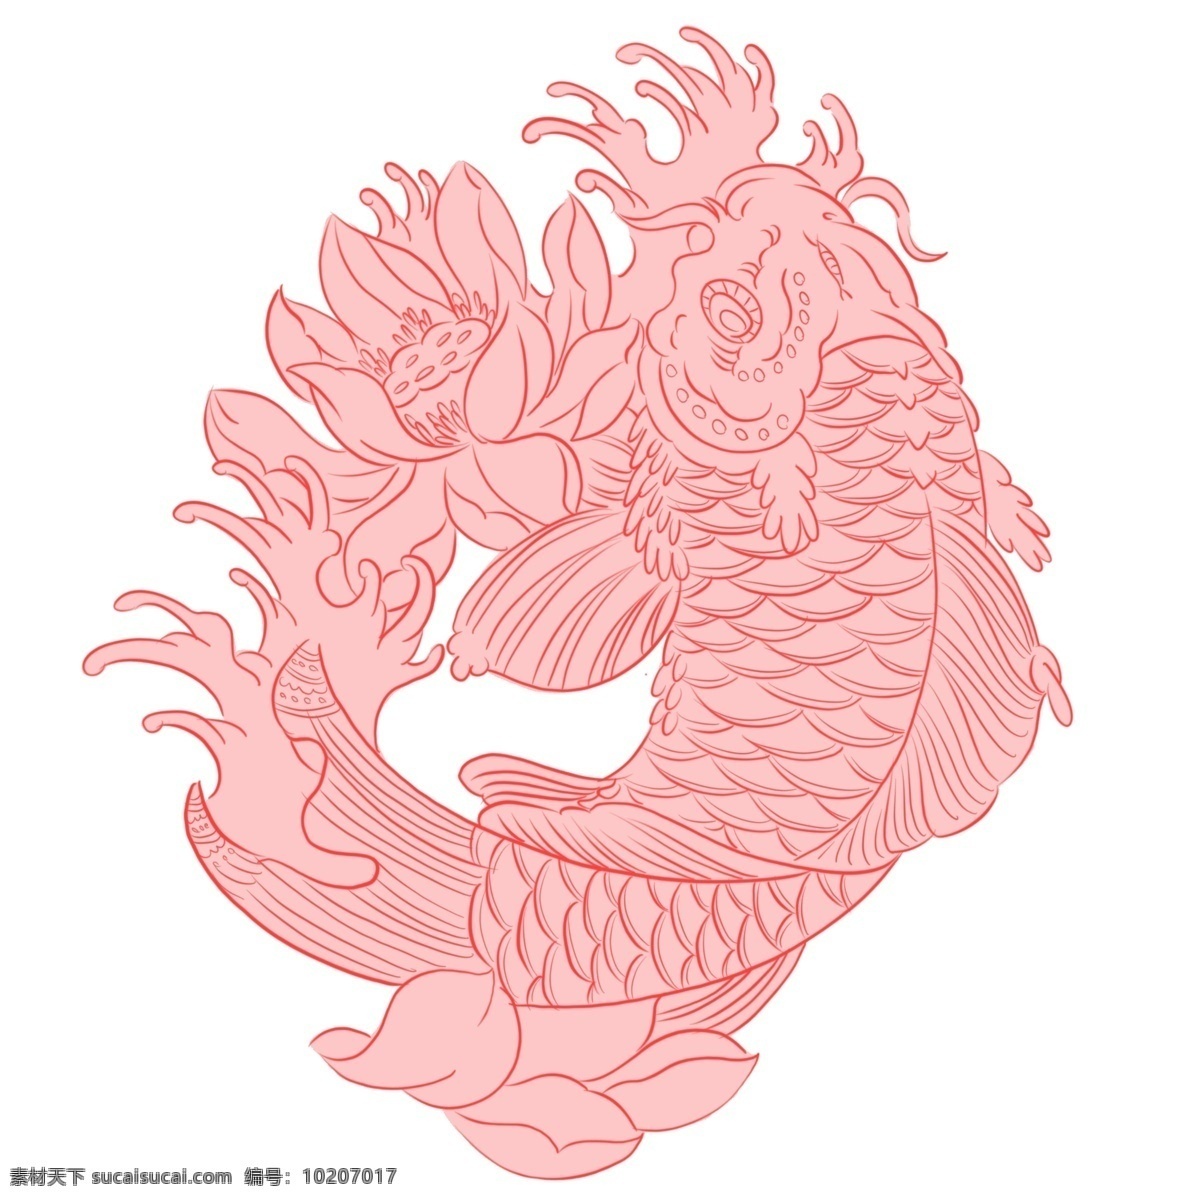 手绘 动物 红色 创意 中 国风 鲤鱼 手绘动物 创意鲤鱼 创意锦鲤 锦鲤剪影 鲤鱼剪影